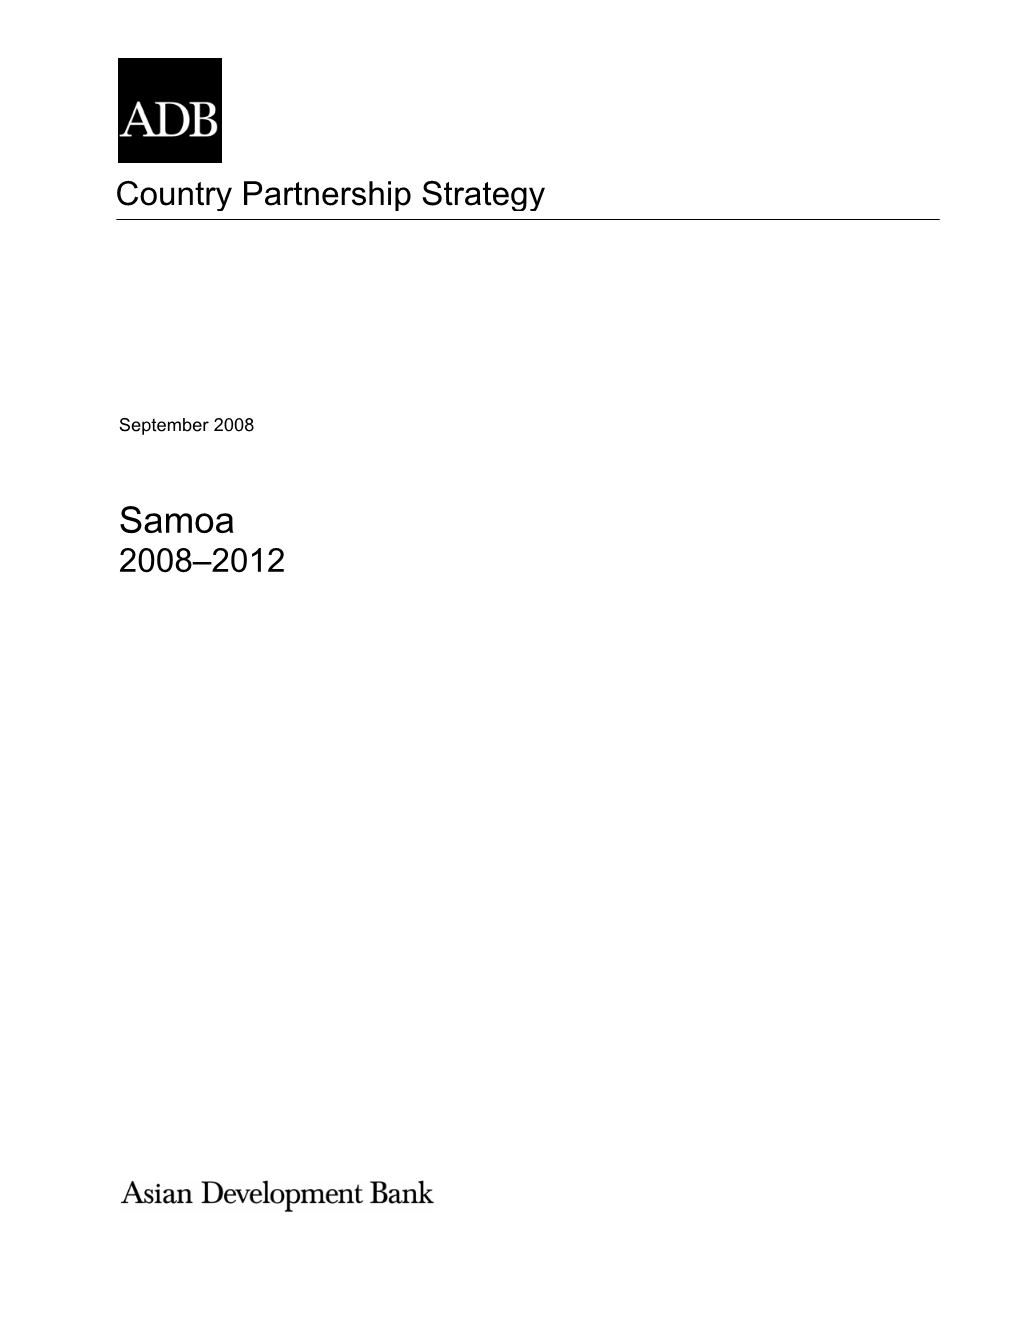 Country Partnership Strategy: Samoa 2008-2012